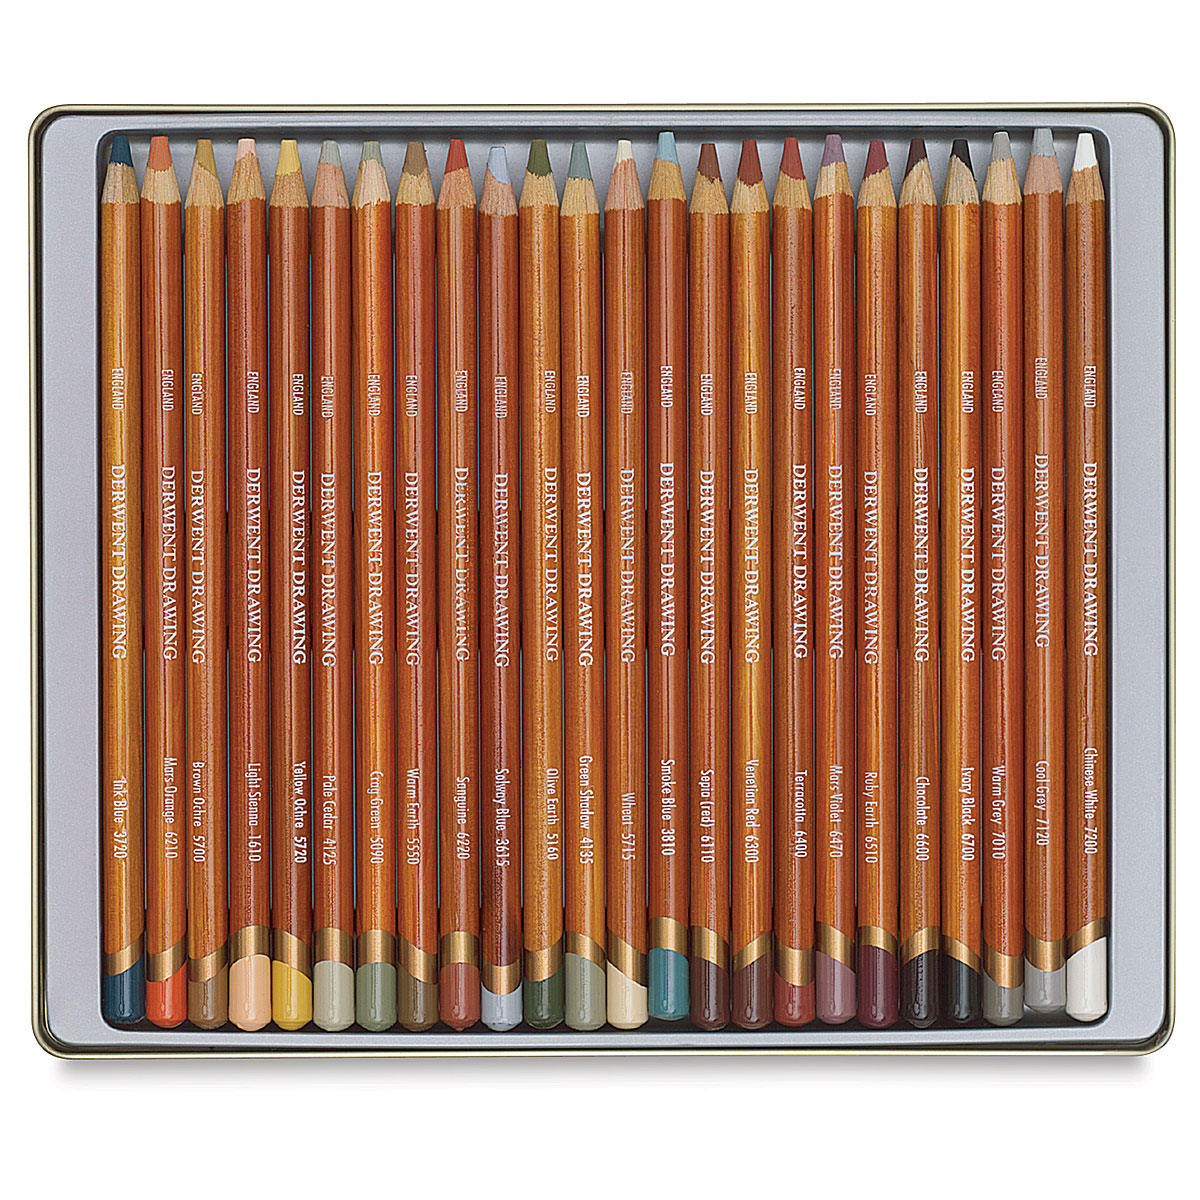 Derwent Drawing Pencil Set - Set of 24 | BLICK Art Materials